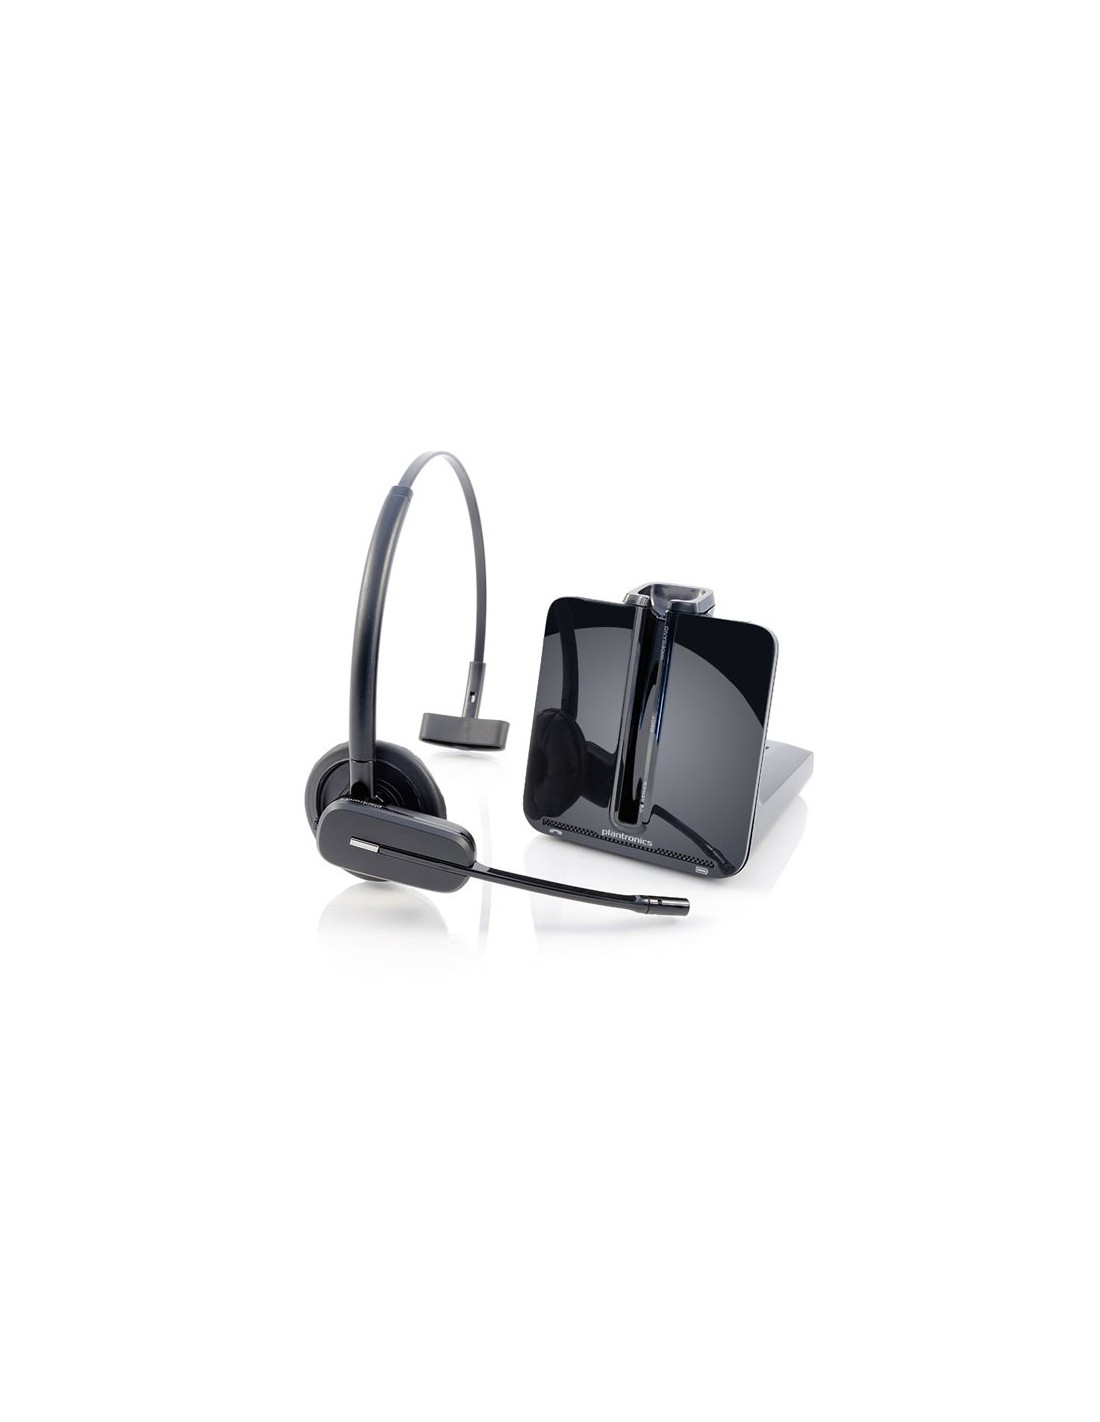 Comprar el mejor auricular Inalambrico Plantronics CS540 sin descolgador